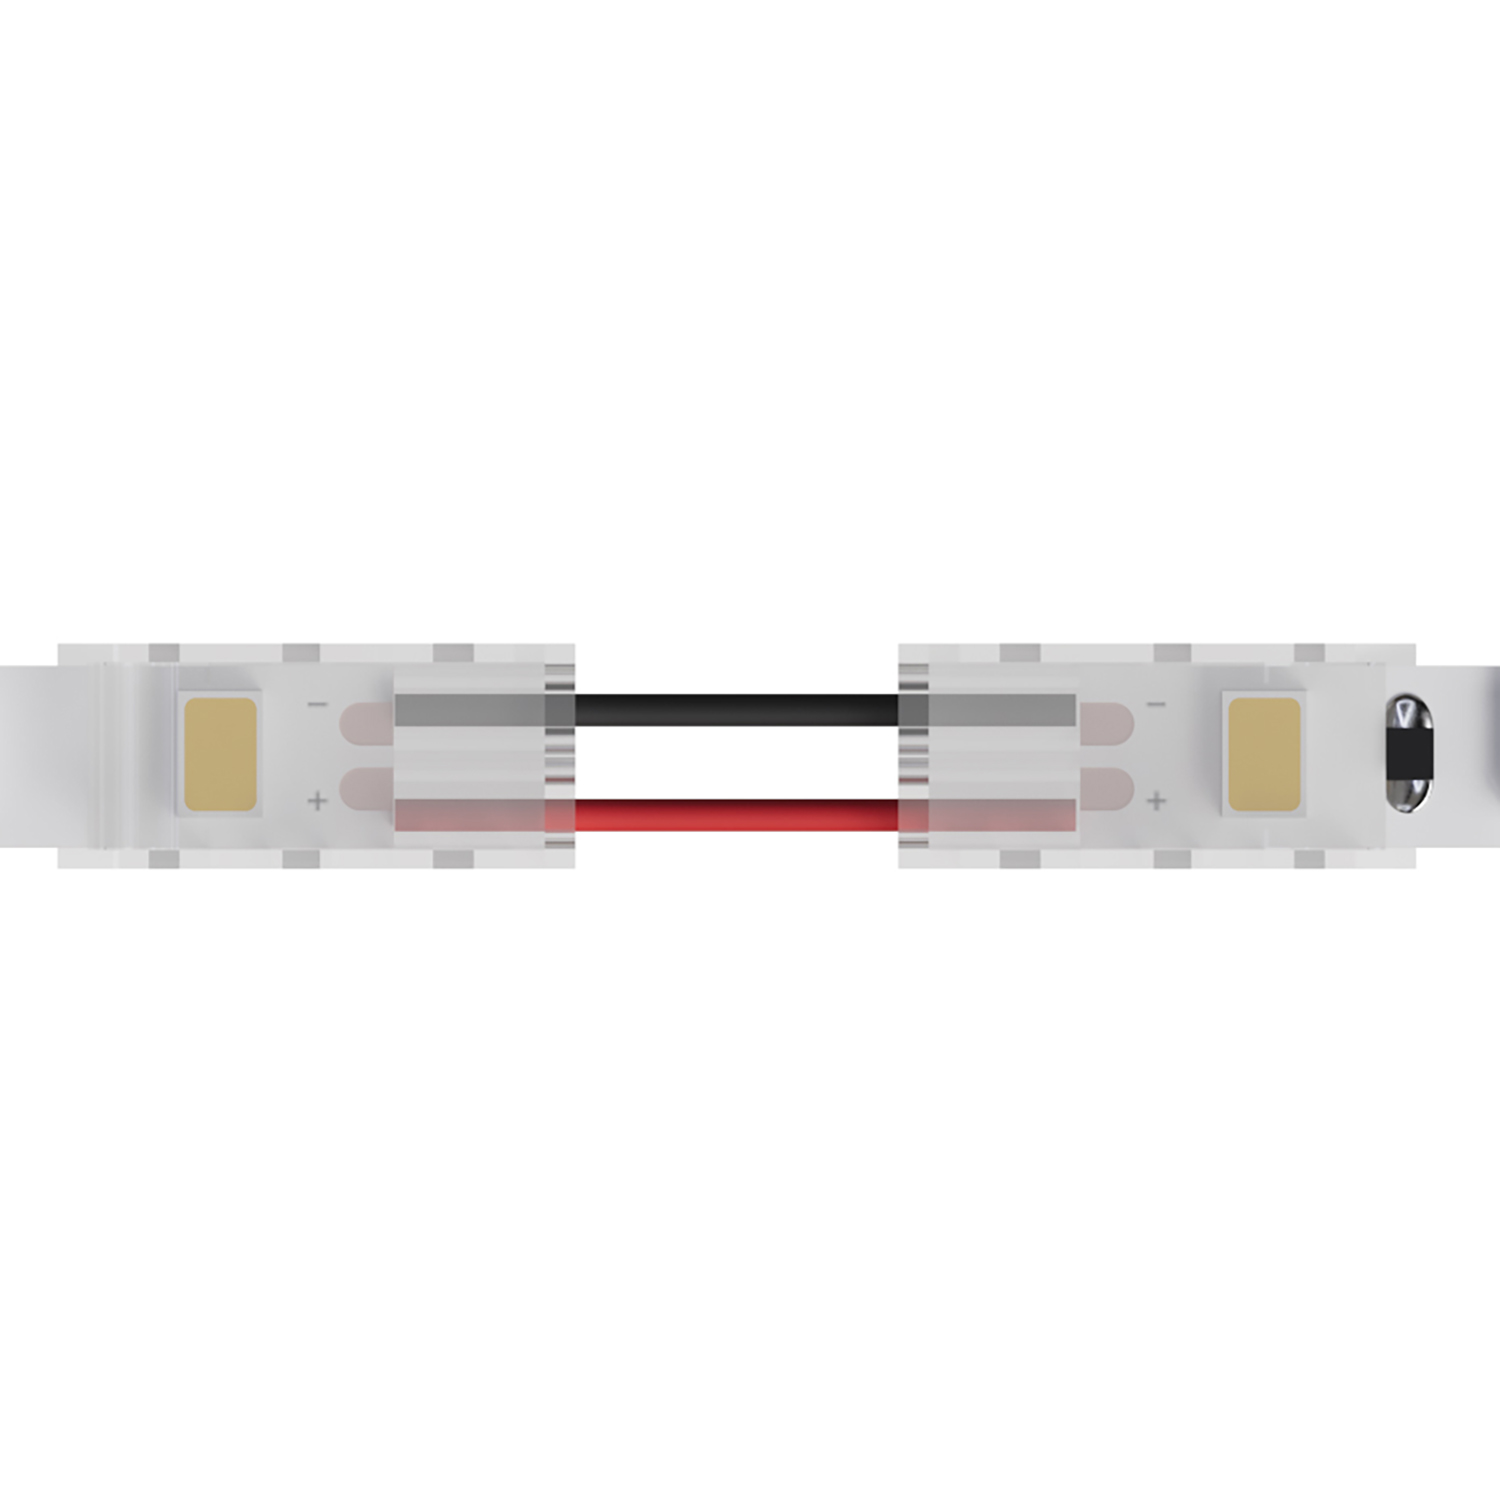 Коннектор гибкий для одноцветной светодиодной ленты шириной 8 мм, в комплекте 5 шт Arte Lamp a31-08-1cct коннектор гибкий для одноцветной светодиодной ленты шириной 8 мм в комплекте 5 шт arte lamp a31 08 1cct